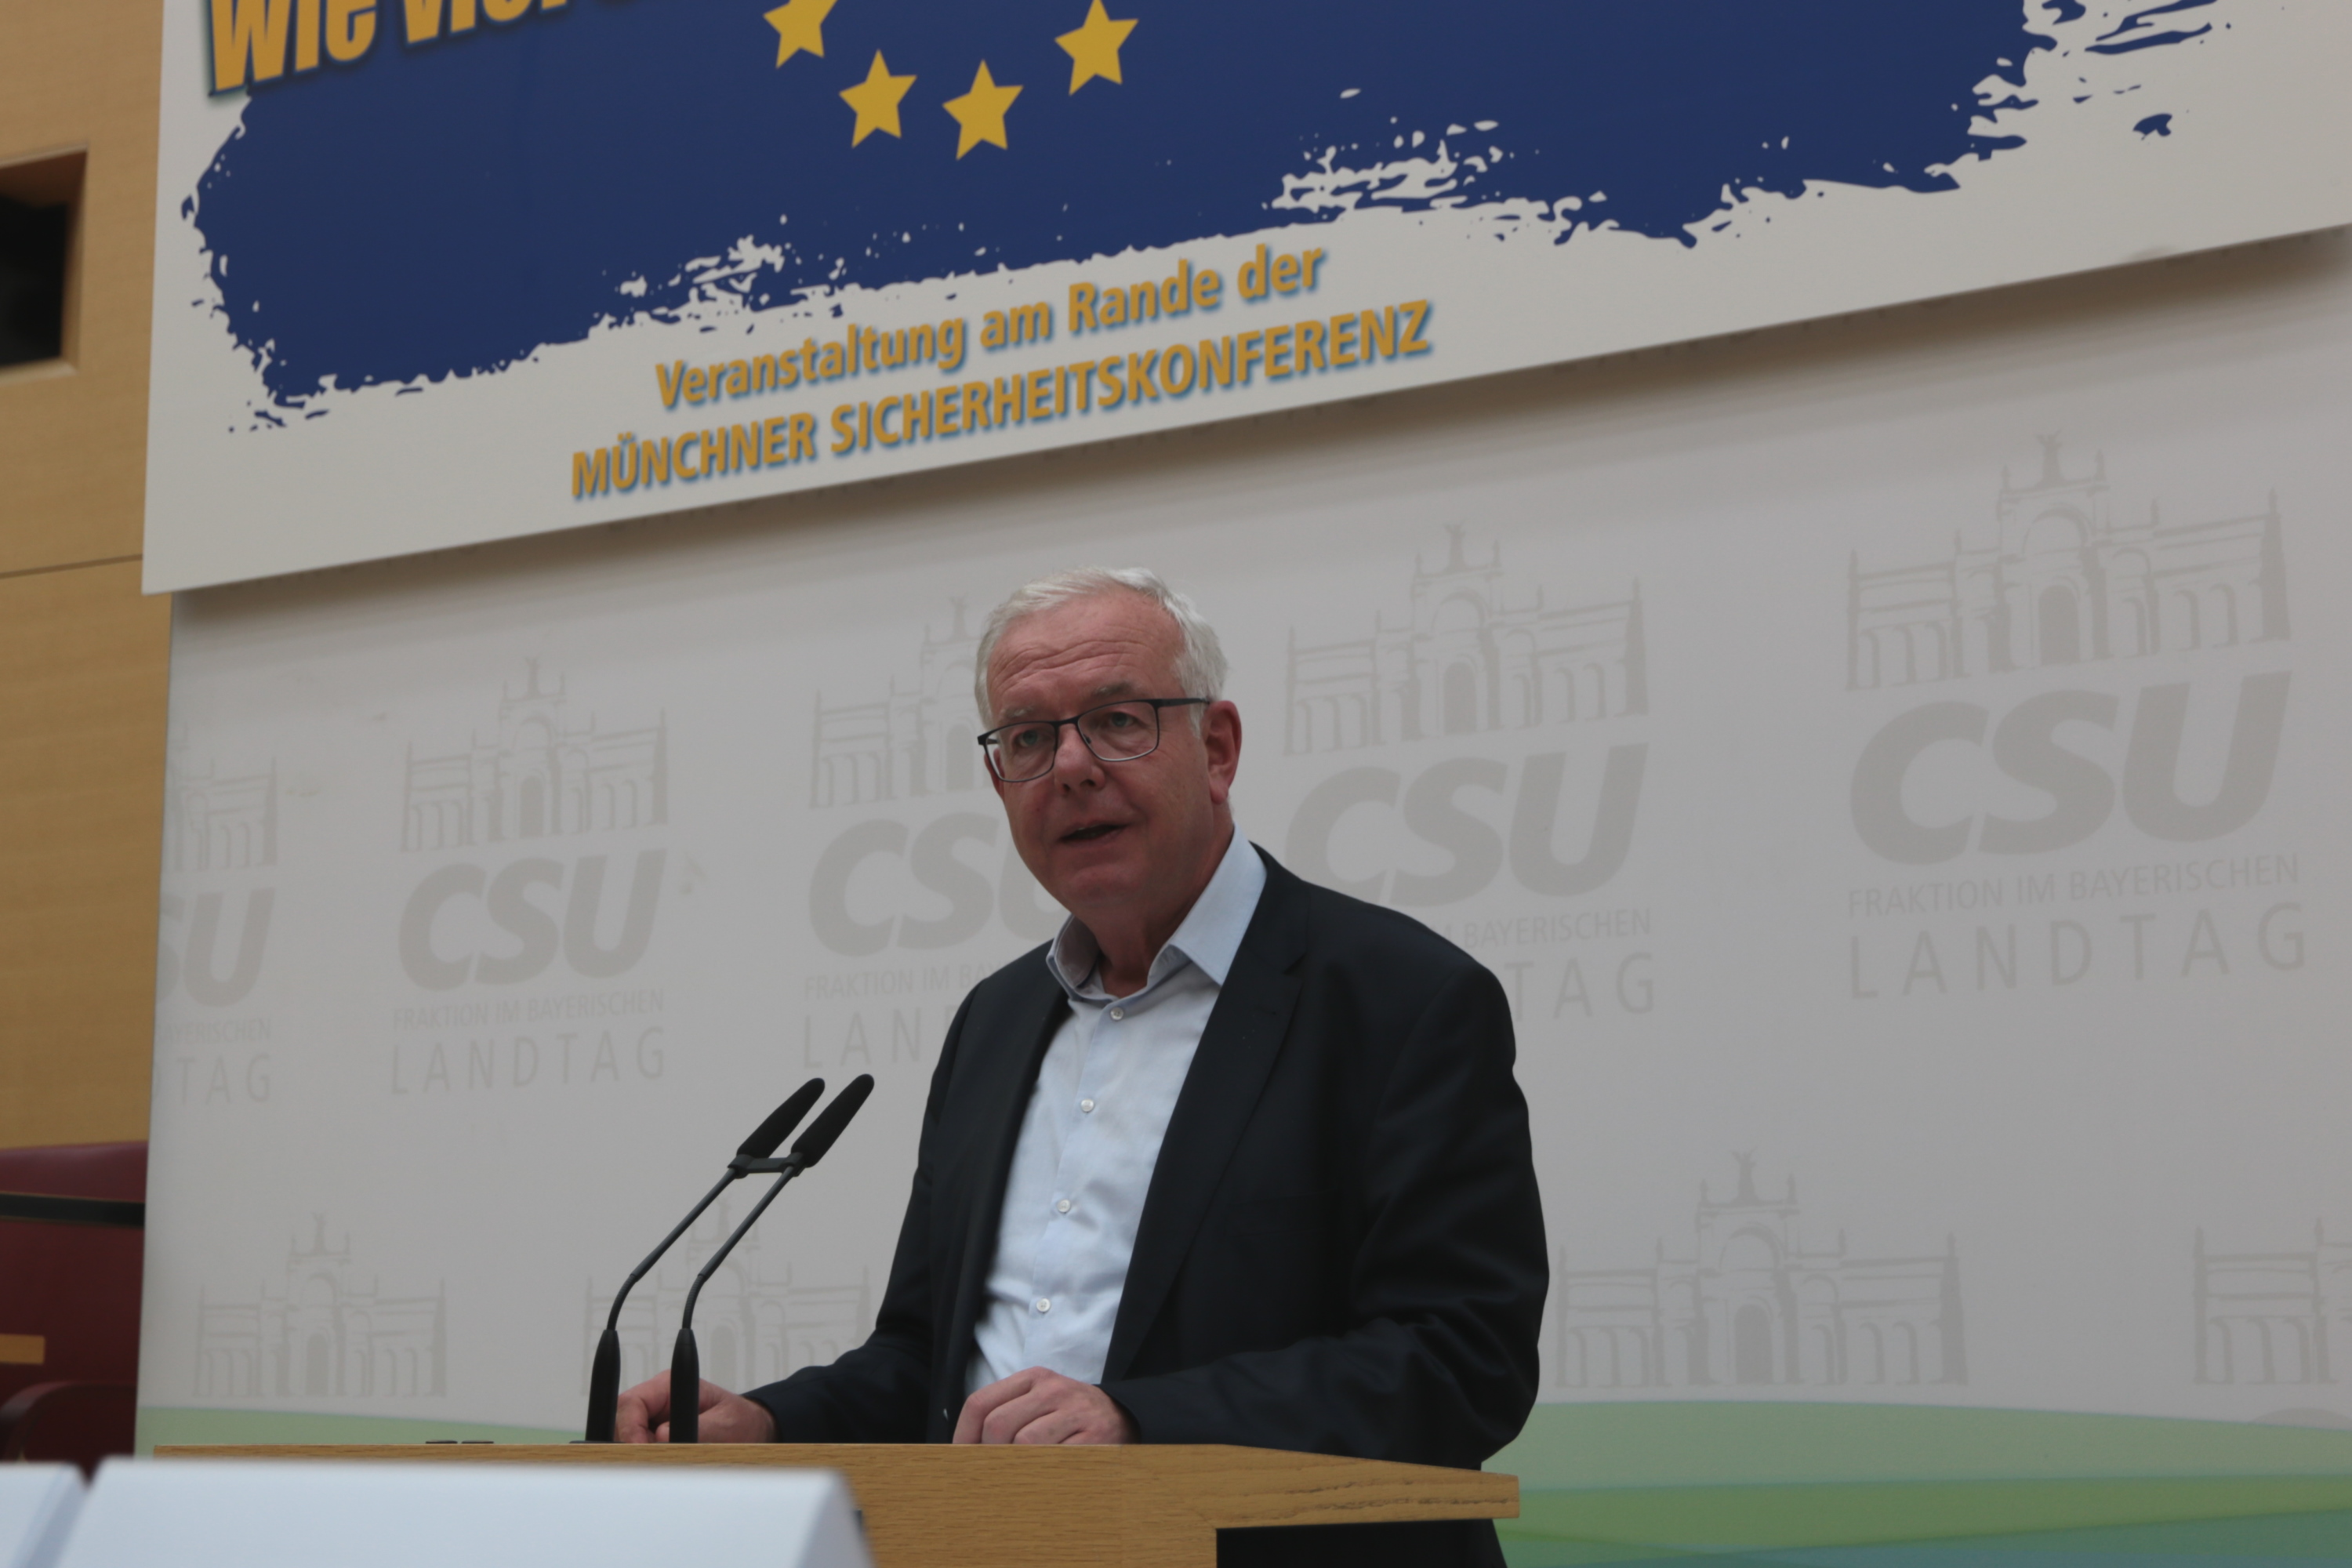 11.21.2020 - Wie viel Sicherheit braucht Europa? Veranstaltung am Rande der Münchner Sicherheitskonferenz 2020 - Fraktionsvorsitzender Thomas Kreuzer begrüßte die Gäste und Teilnehmer der Veranstaltung. (Foto: CSU-Fraktion) 